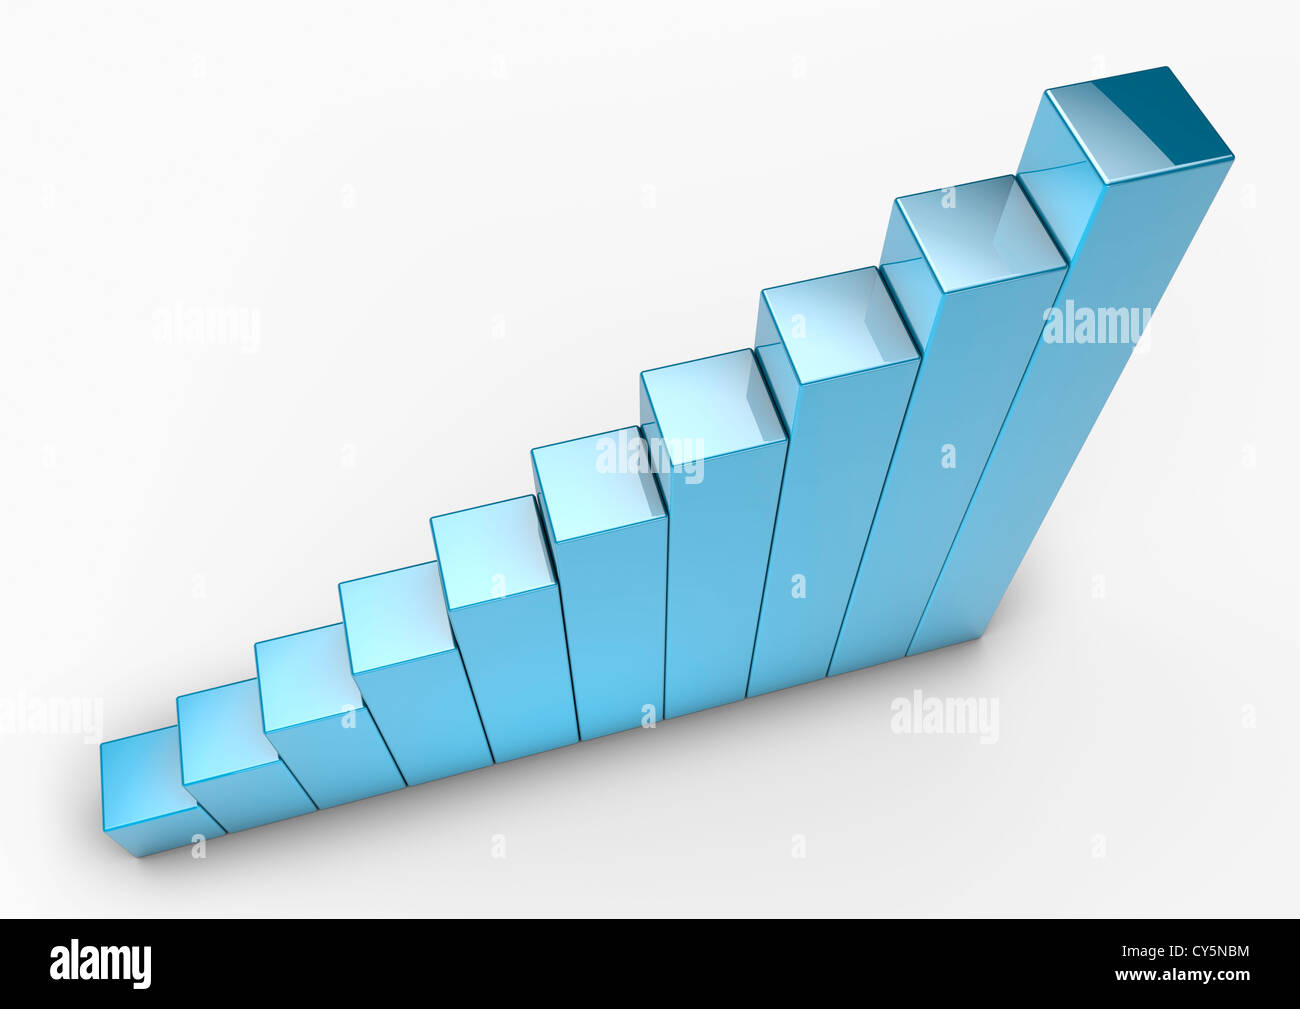 Reihe von glänzenden blauen Blöcke bilden eine aufsteigende Grafik - 3D-Render-Konzept Bild Stockfoto